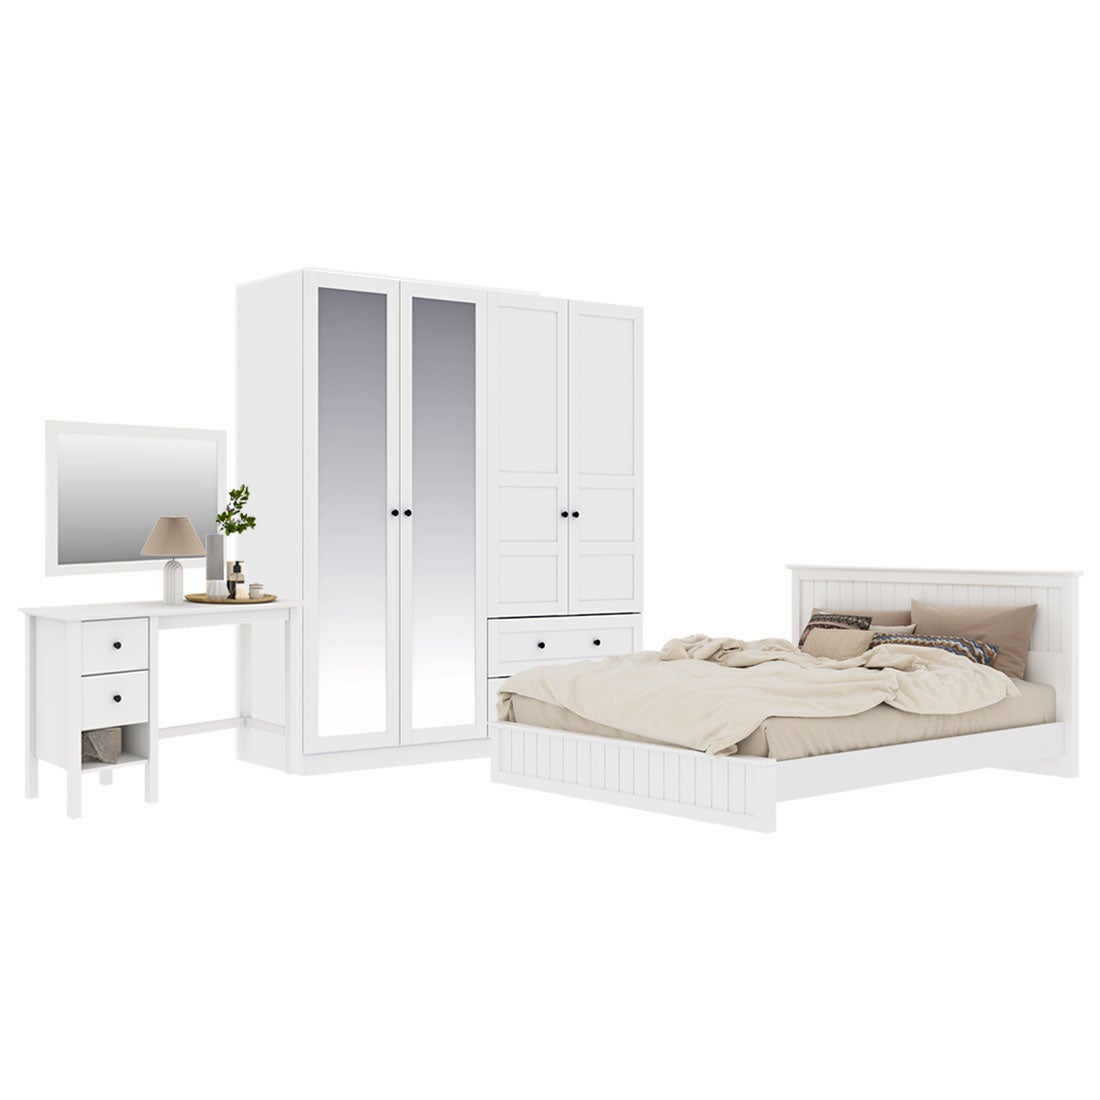 ชุดห้องนอน ขนาด 5 ฟุต รุ่น Moneta & ตู้บานเปิด 180 ซม. สีขาว01